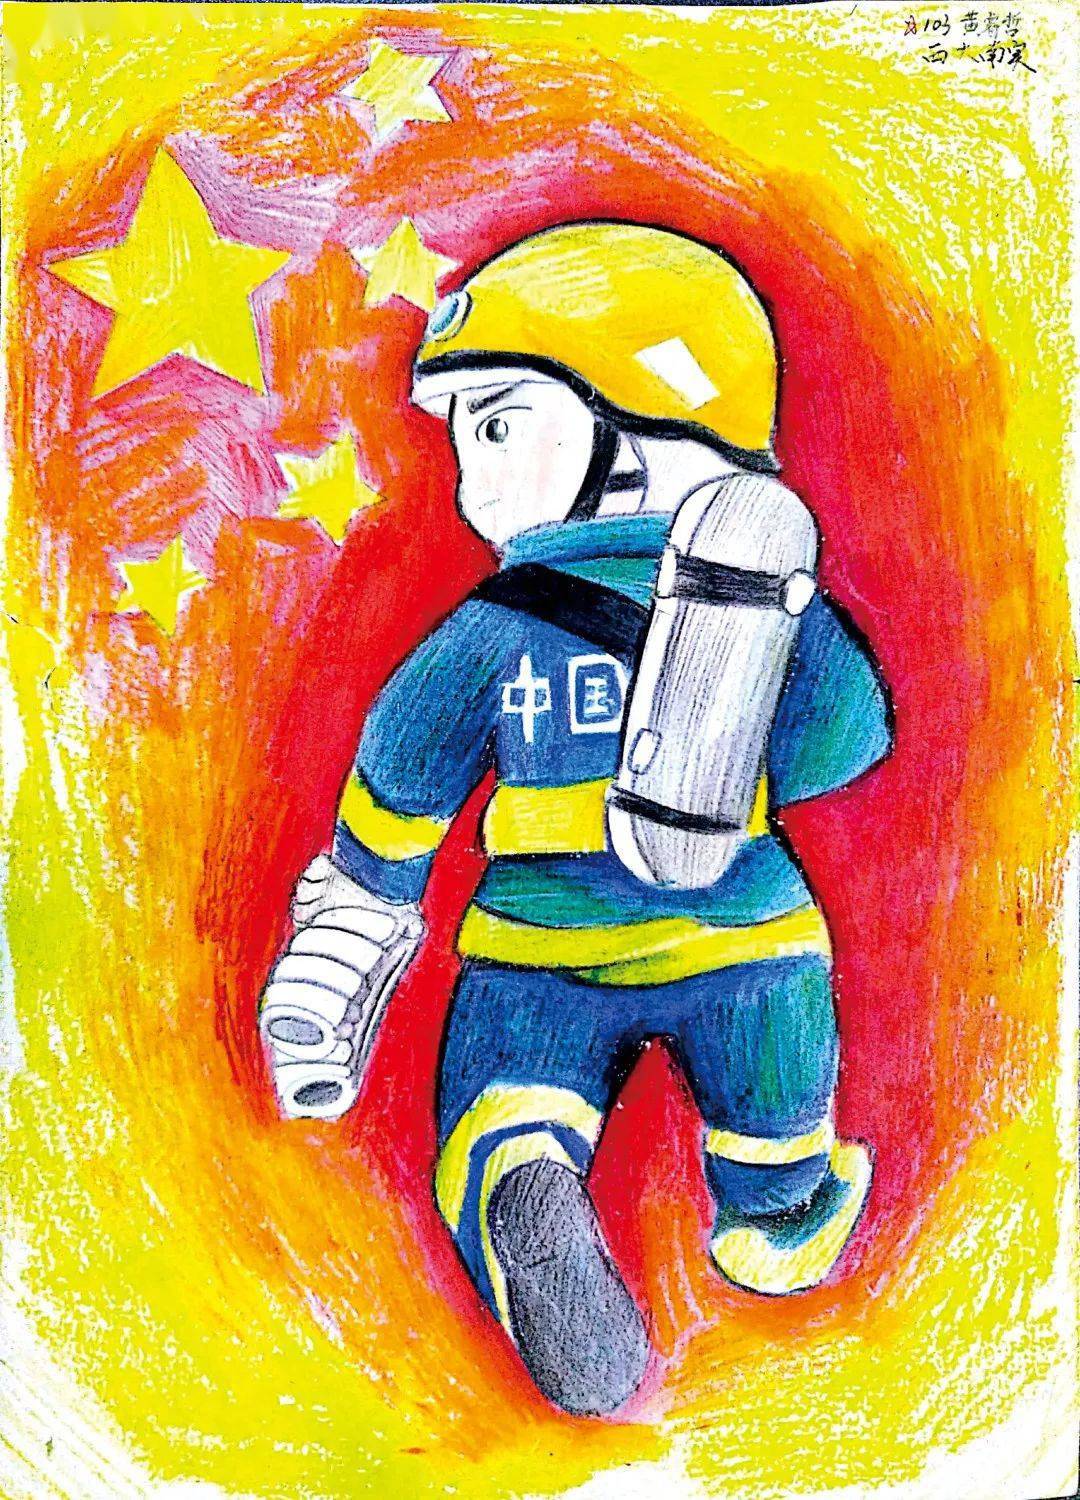 【119儿童消防绘画作品展播三】孩子眼中的消防,你绝对想不到